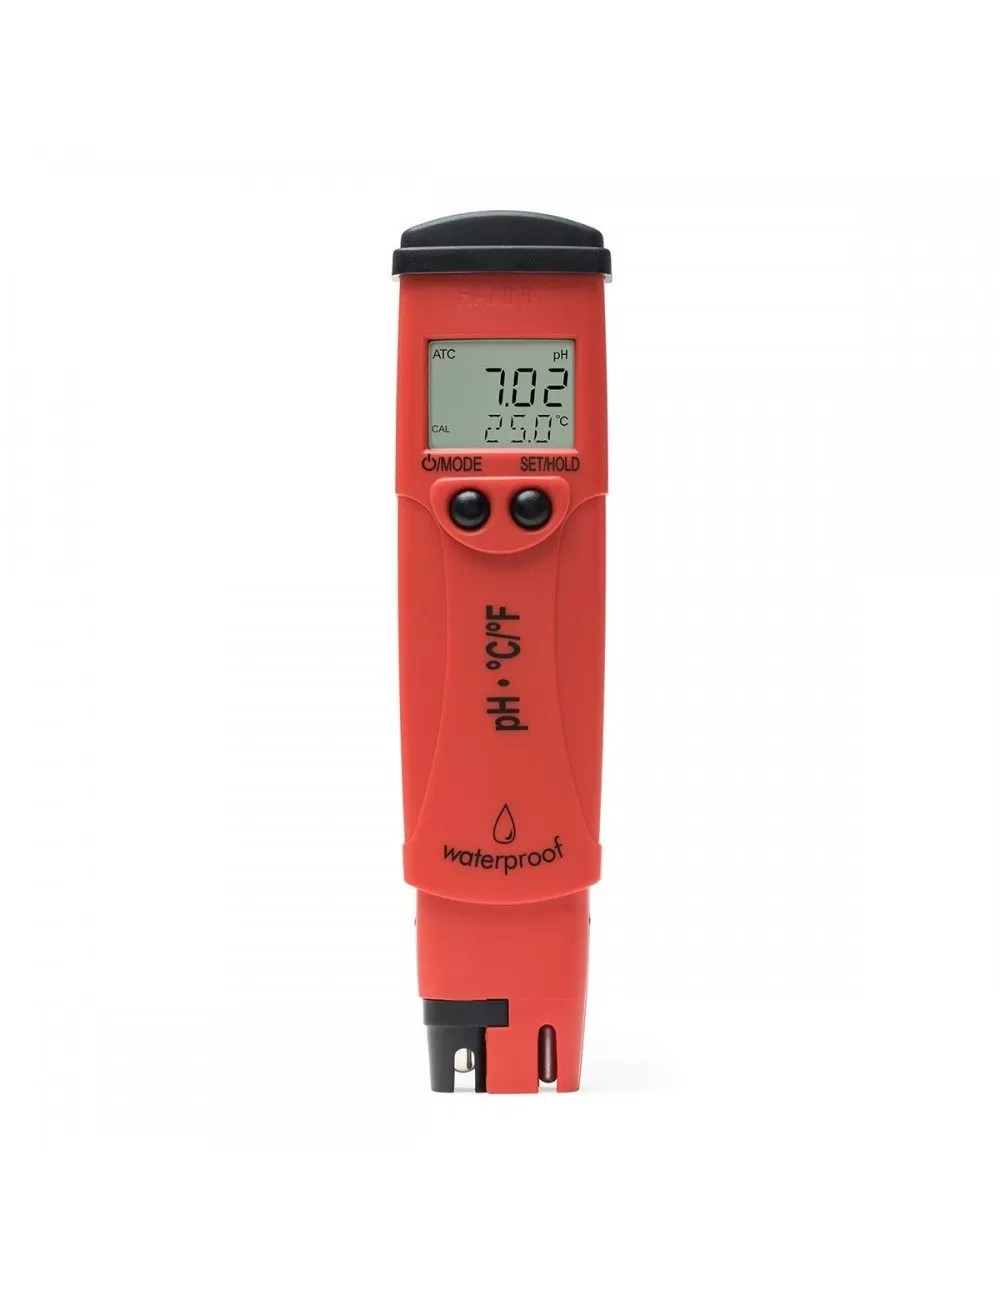 PH-mètre HANNA HI98127 : testeur PH et température de l'eau